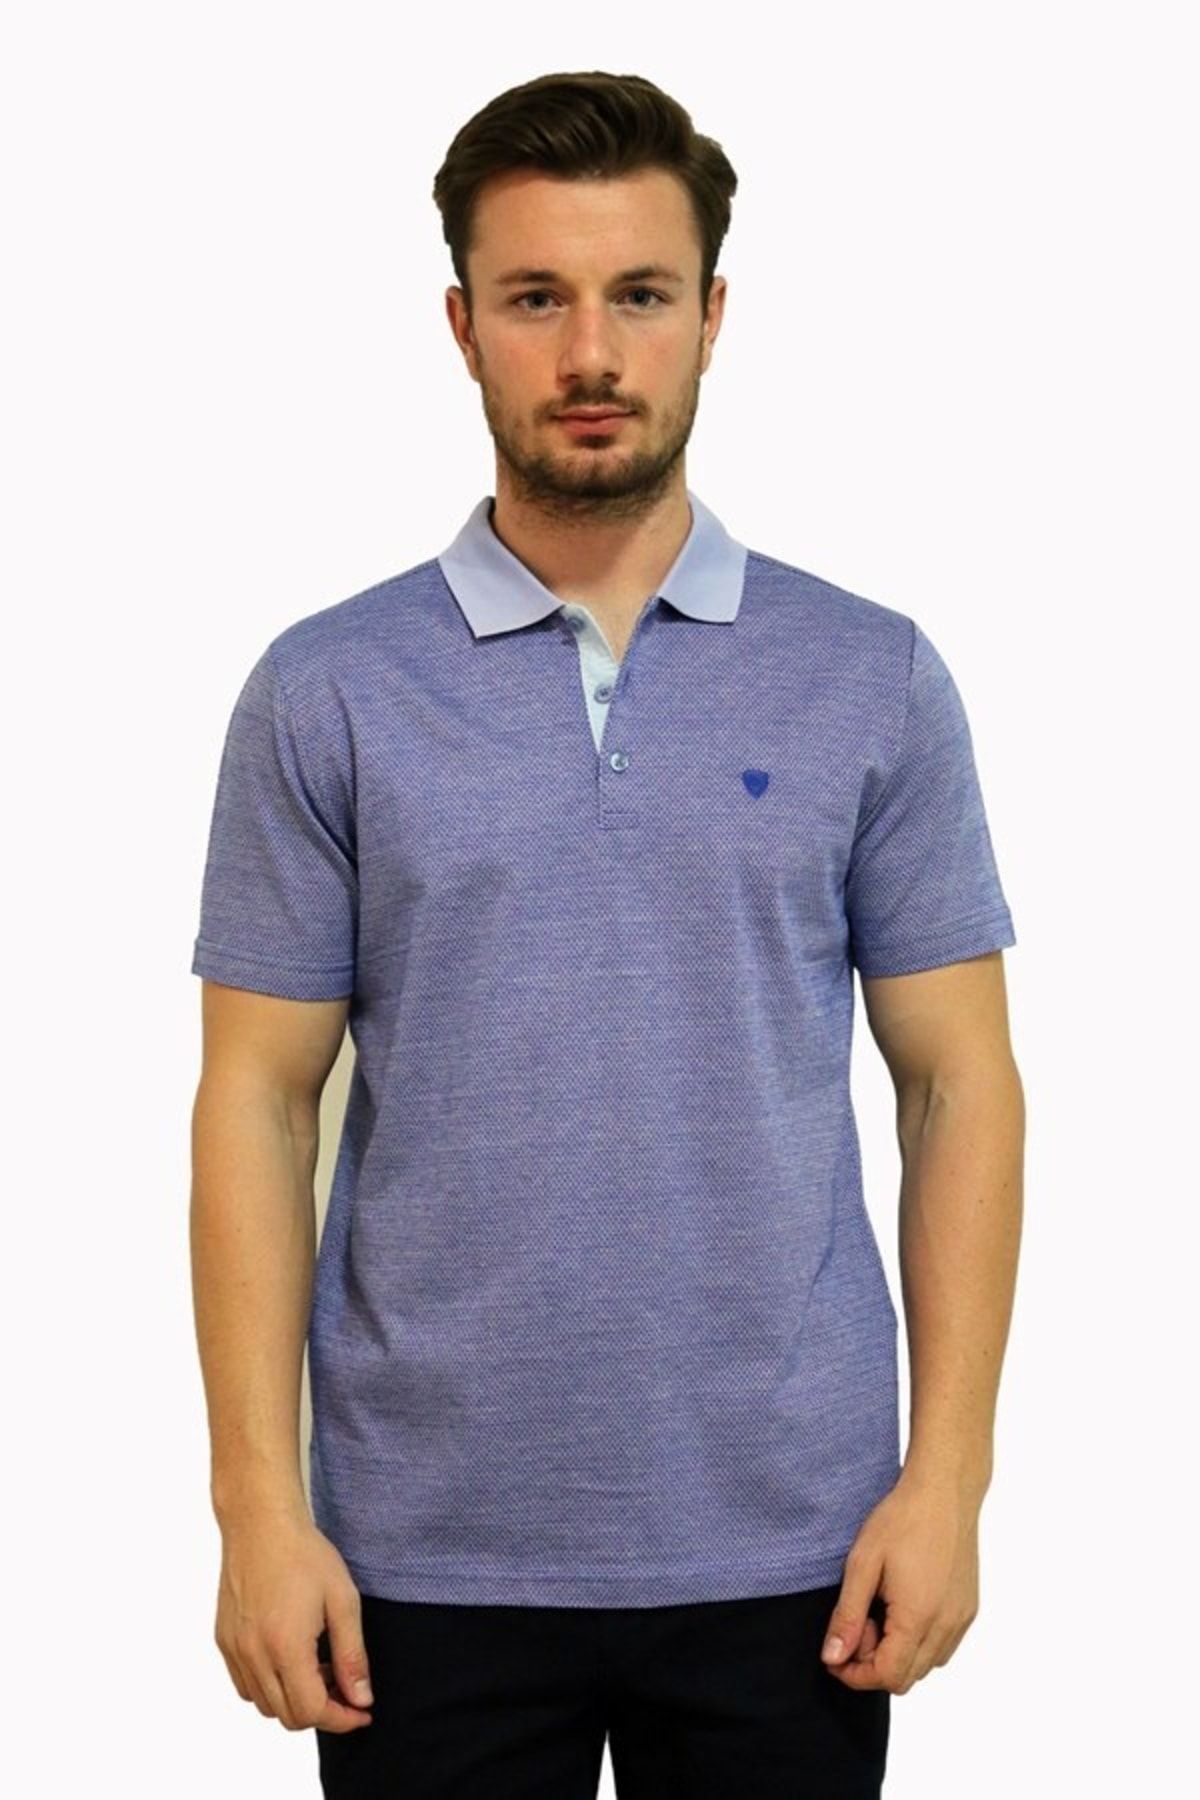 Diandor Erkek T-shirt Mavi/blue 2217408